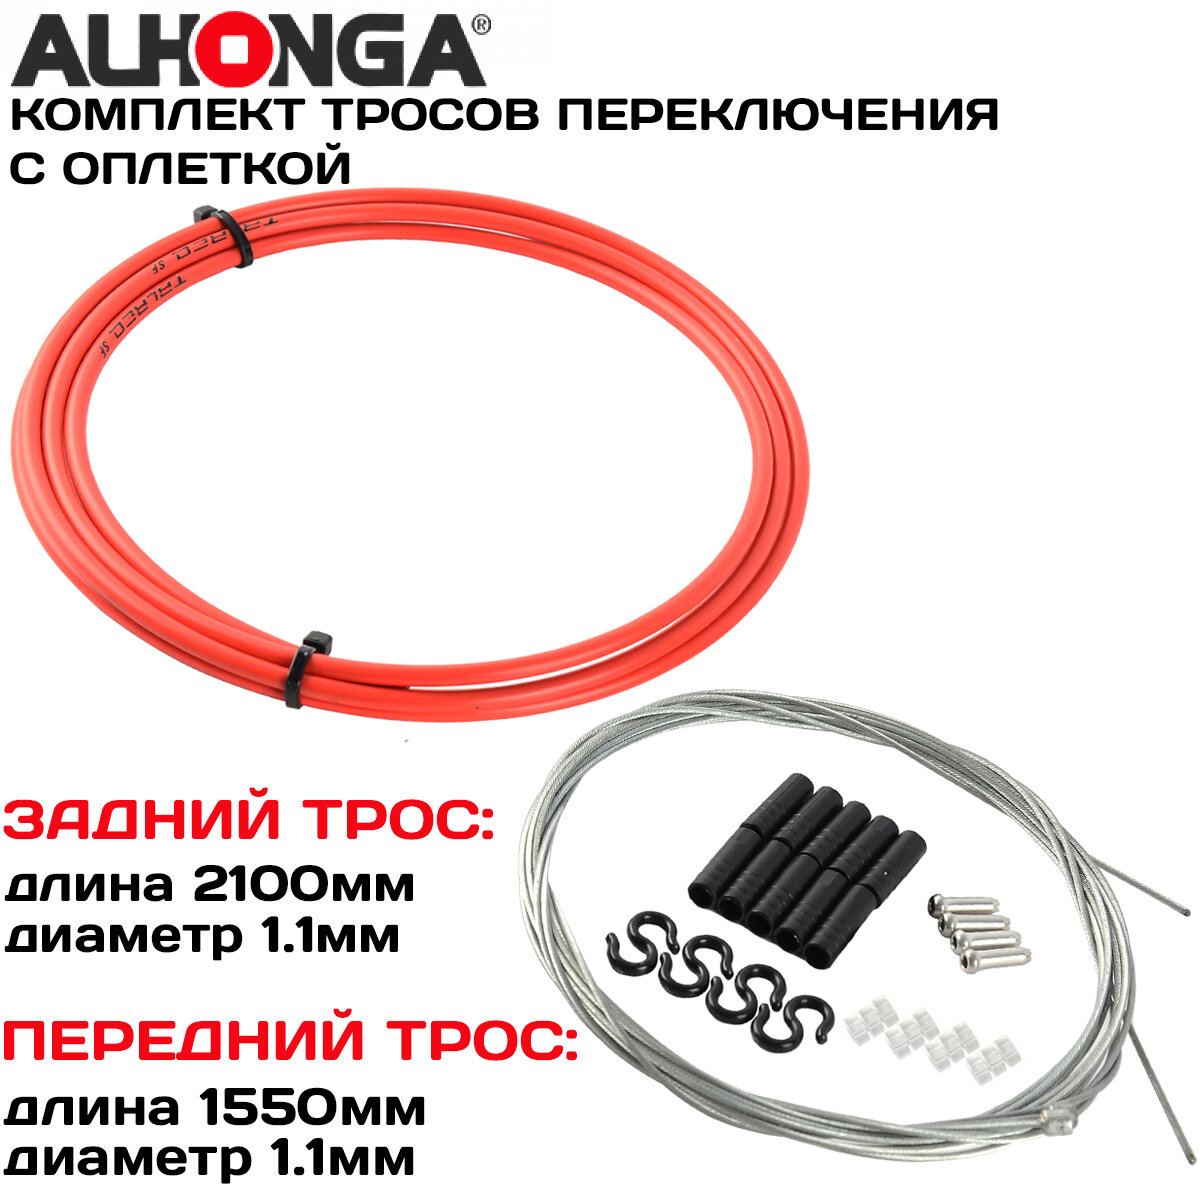 Комплект тросов переключения (2шт) Alhonga МТВ, с оплеткой, концевики оплетки и троса, красный